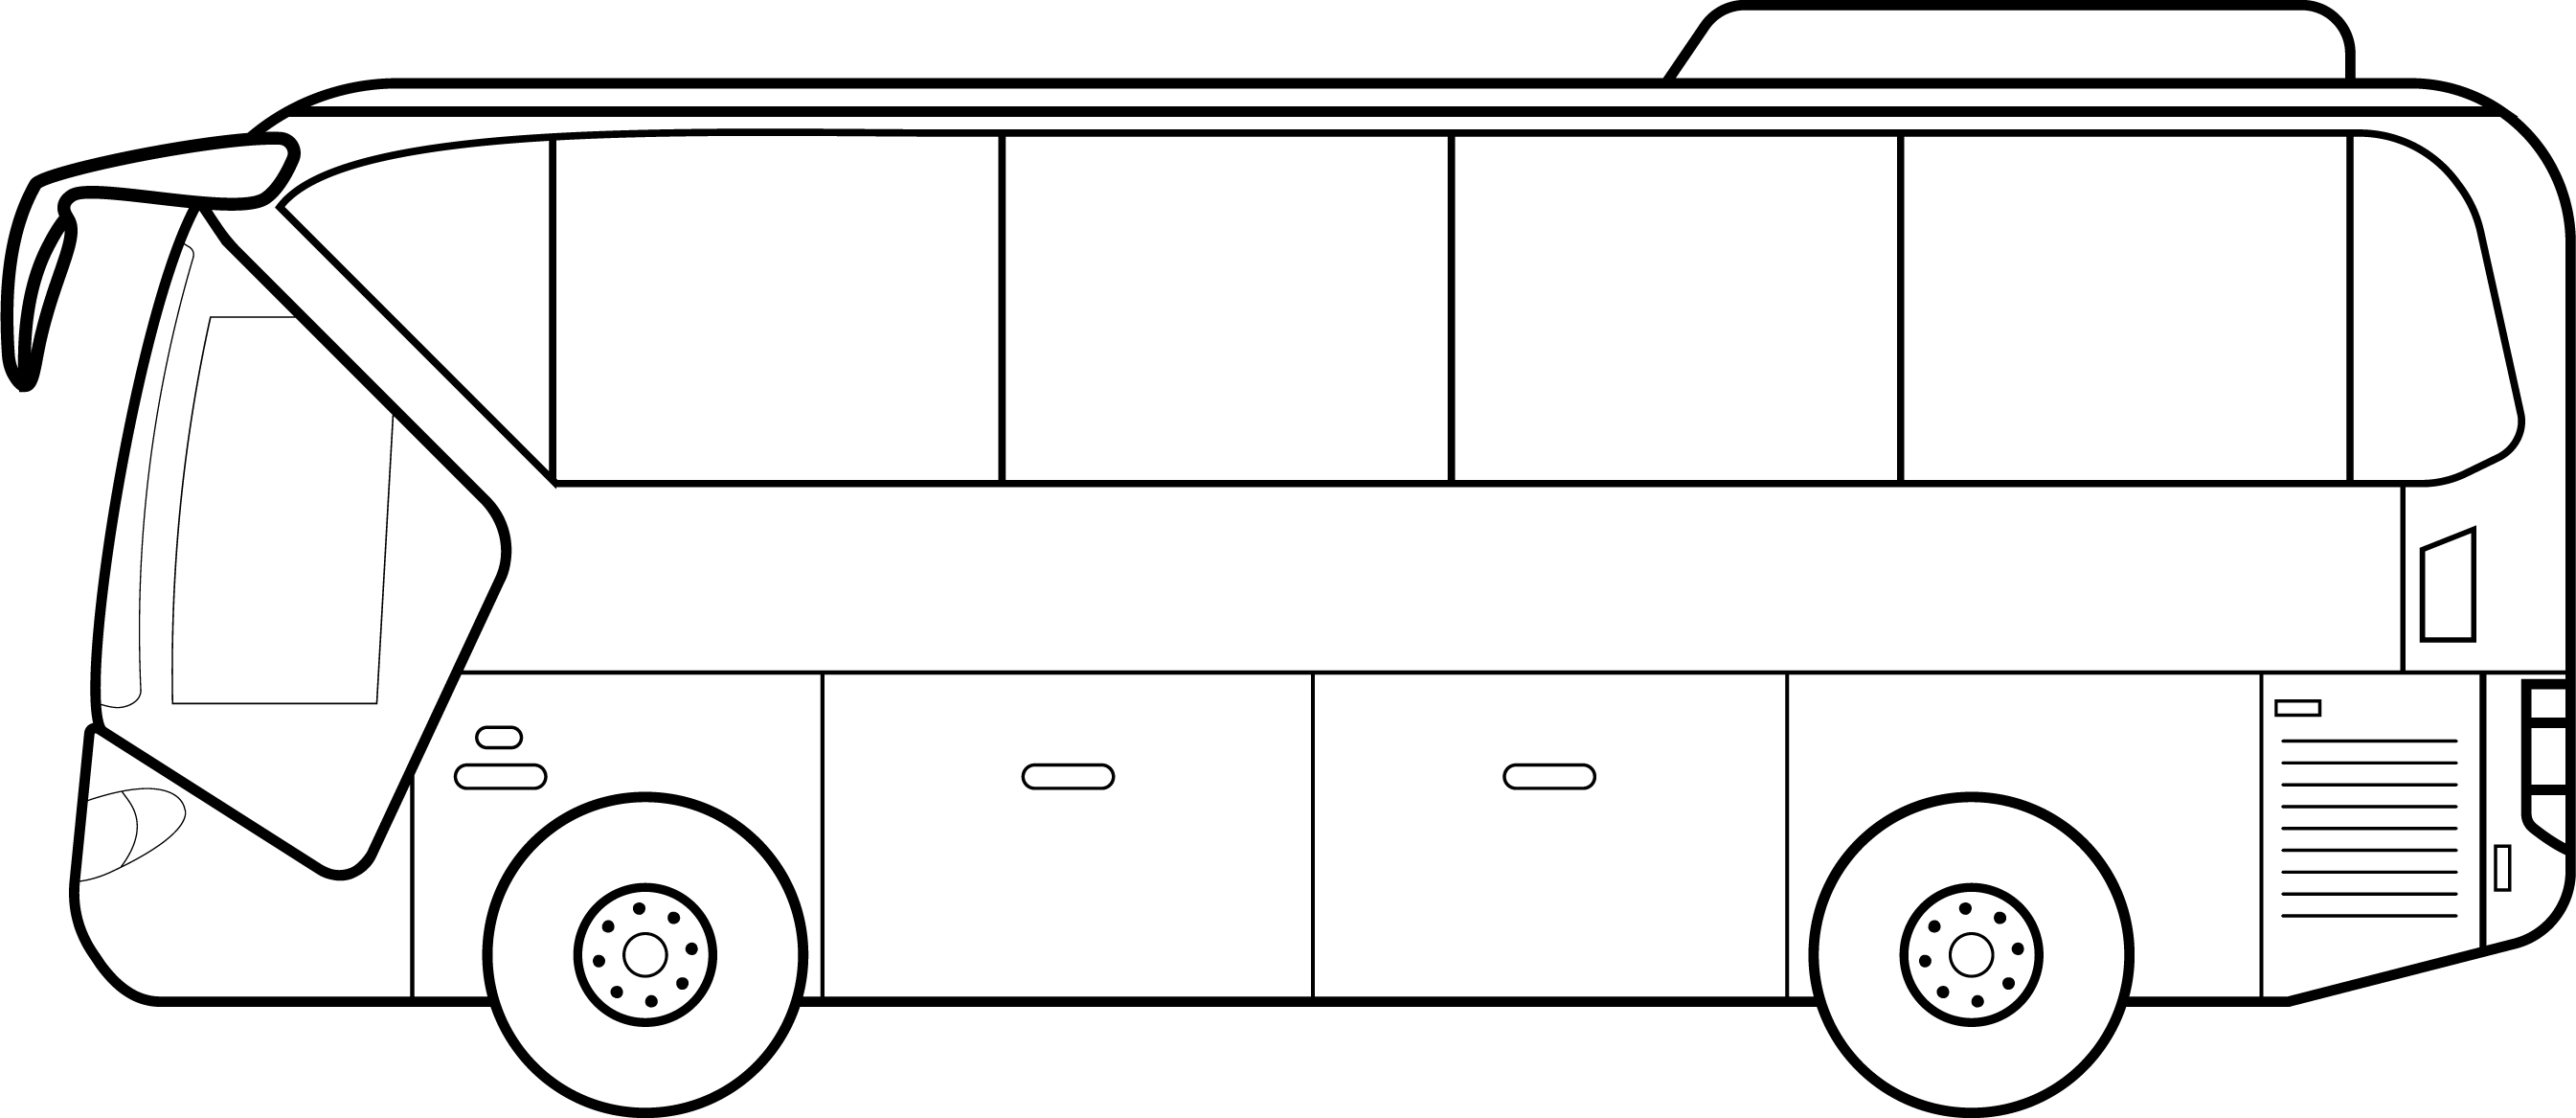 Раскраска городской пассажирский автобус вид сбоку формата А4 в высоком качестве